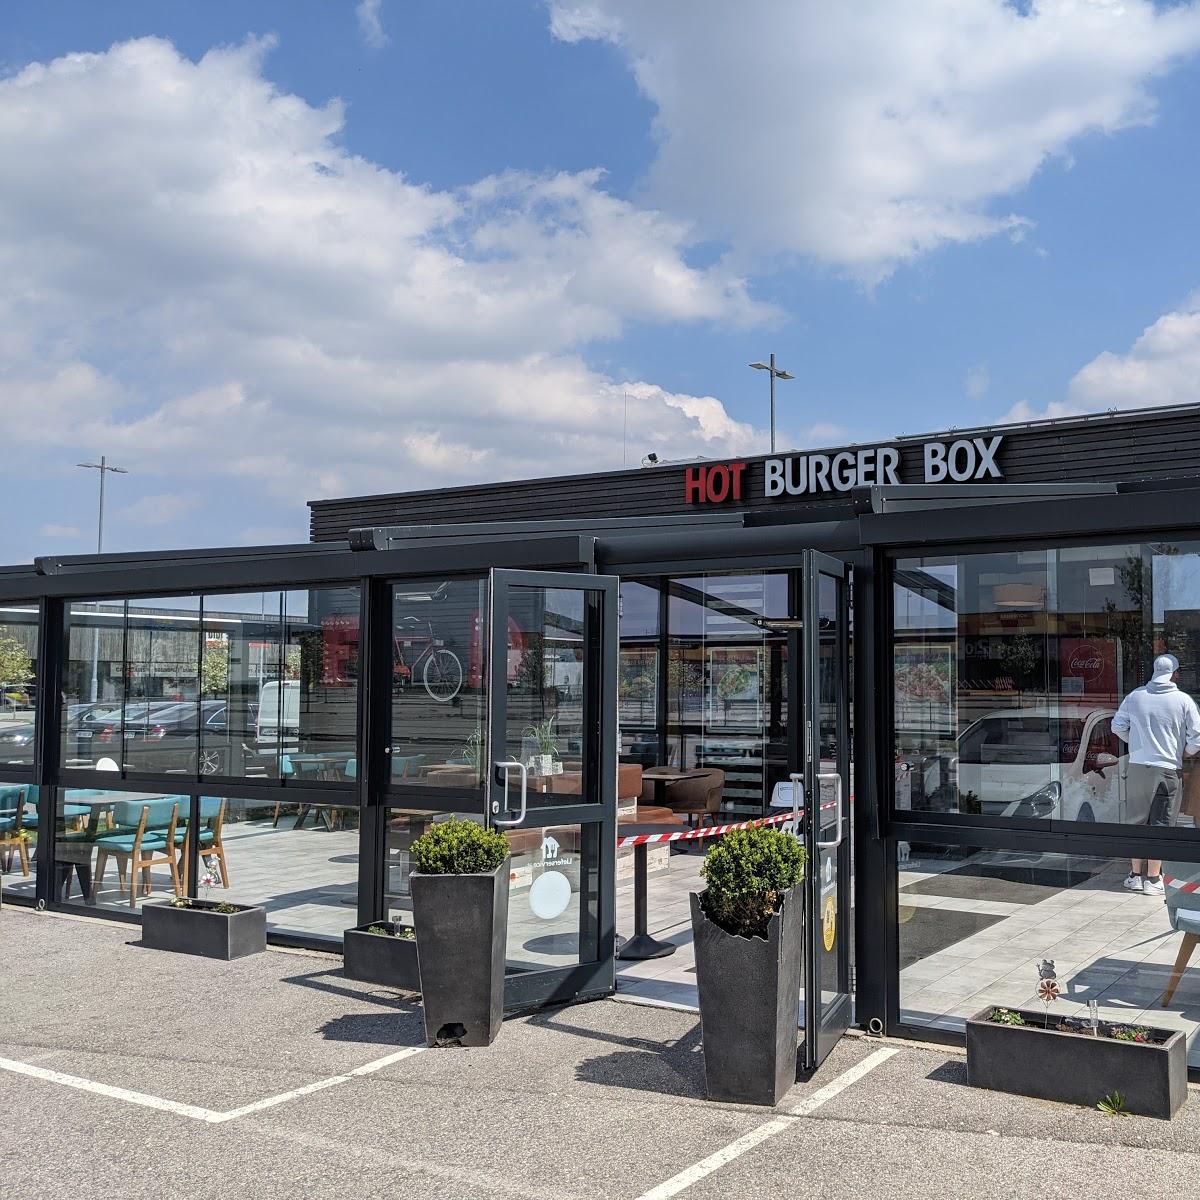 Restaurant "Hot Burger Box" in Asten